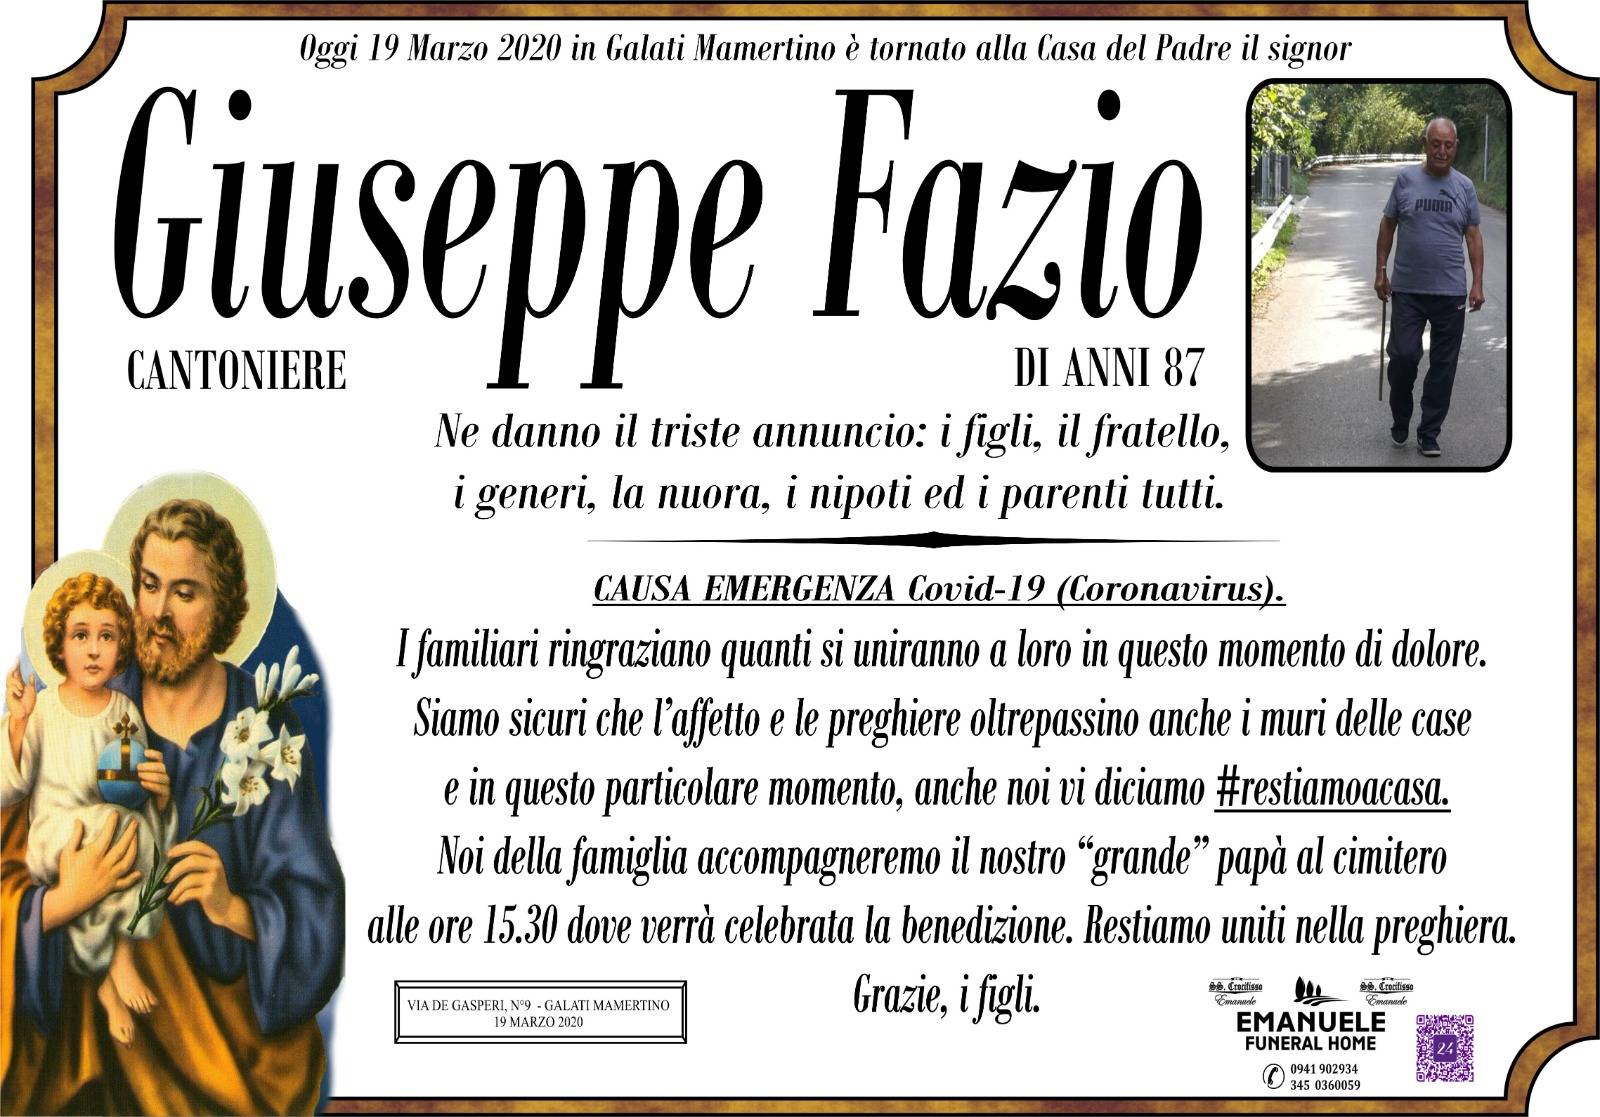 Giuseppe Fazio